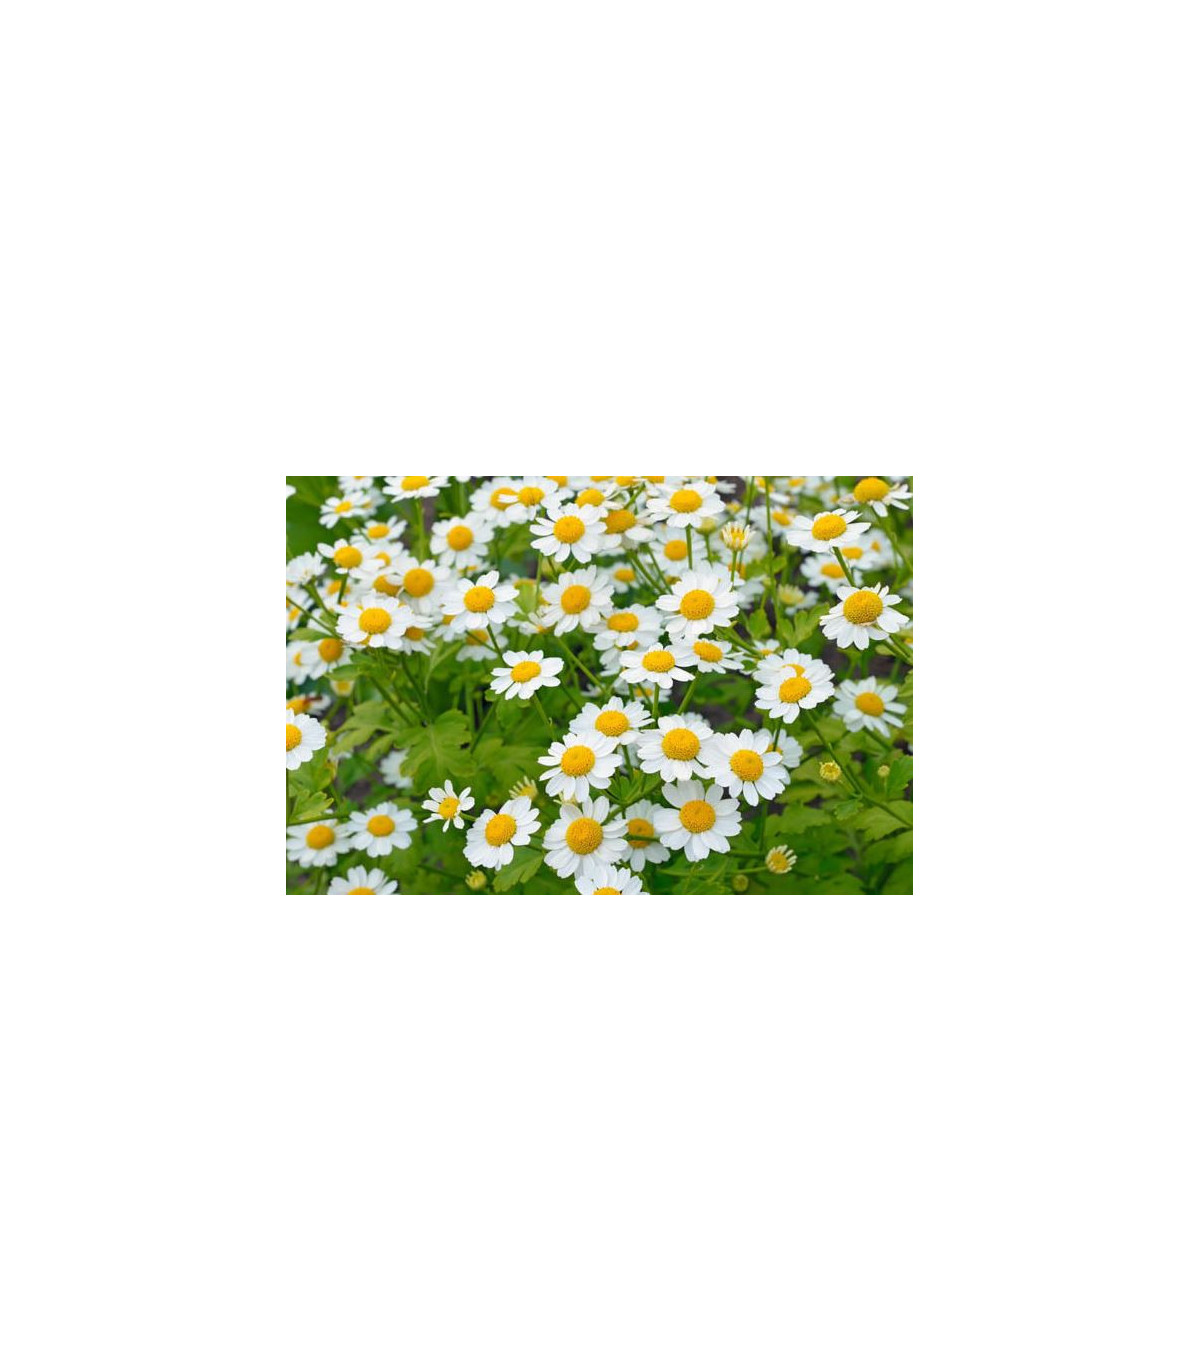 Rimbaba žltá - Chrysanthemum parthenium aureum Golden Feverfew - semiačka - 0,2 g